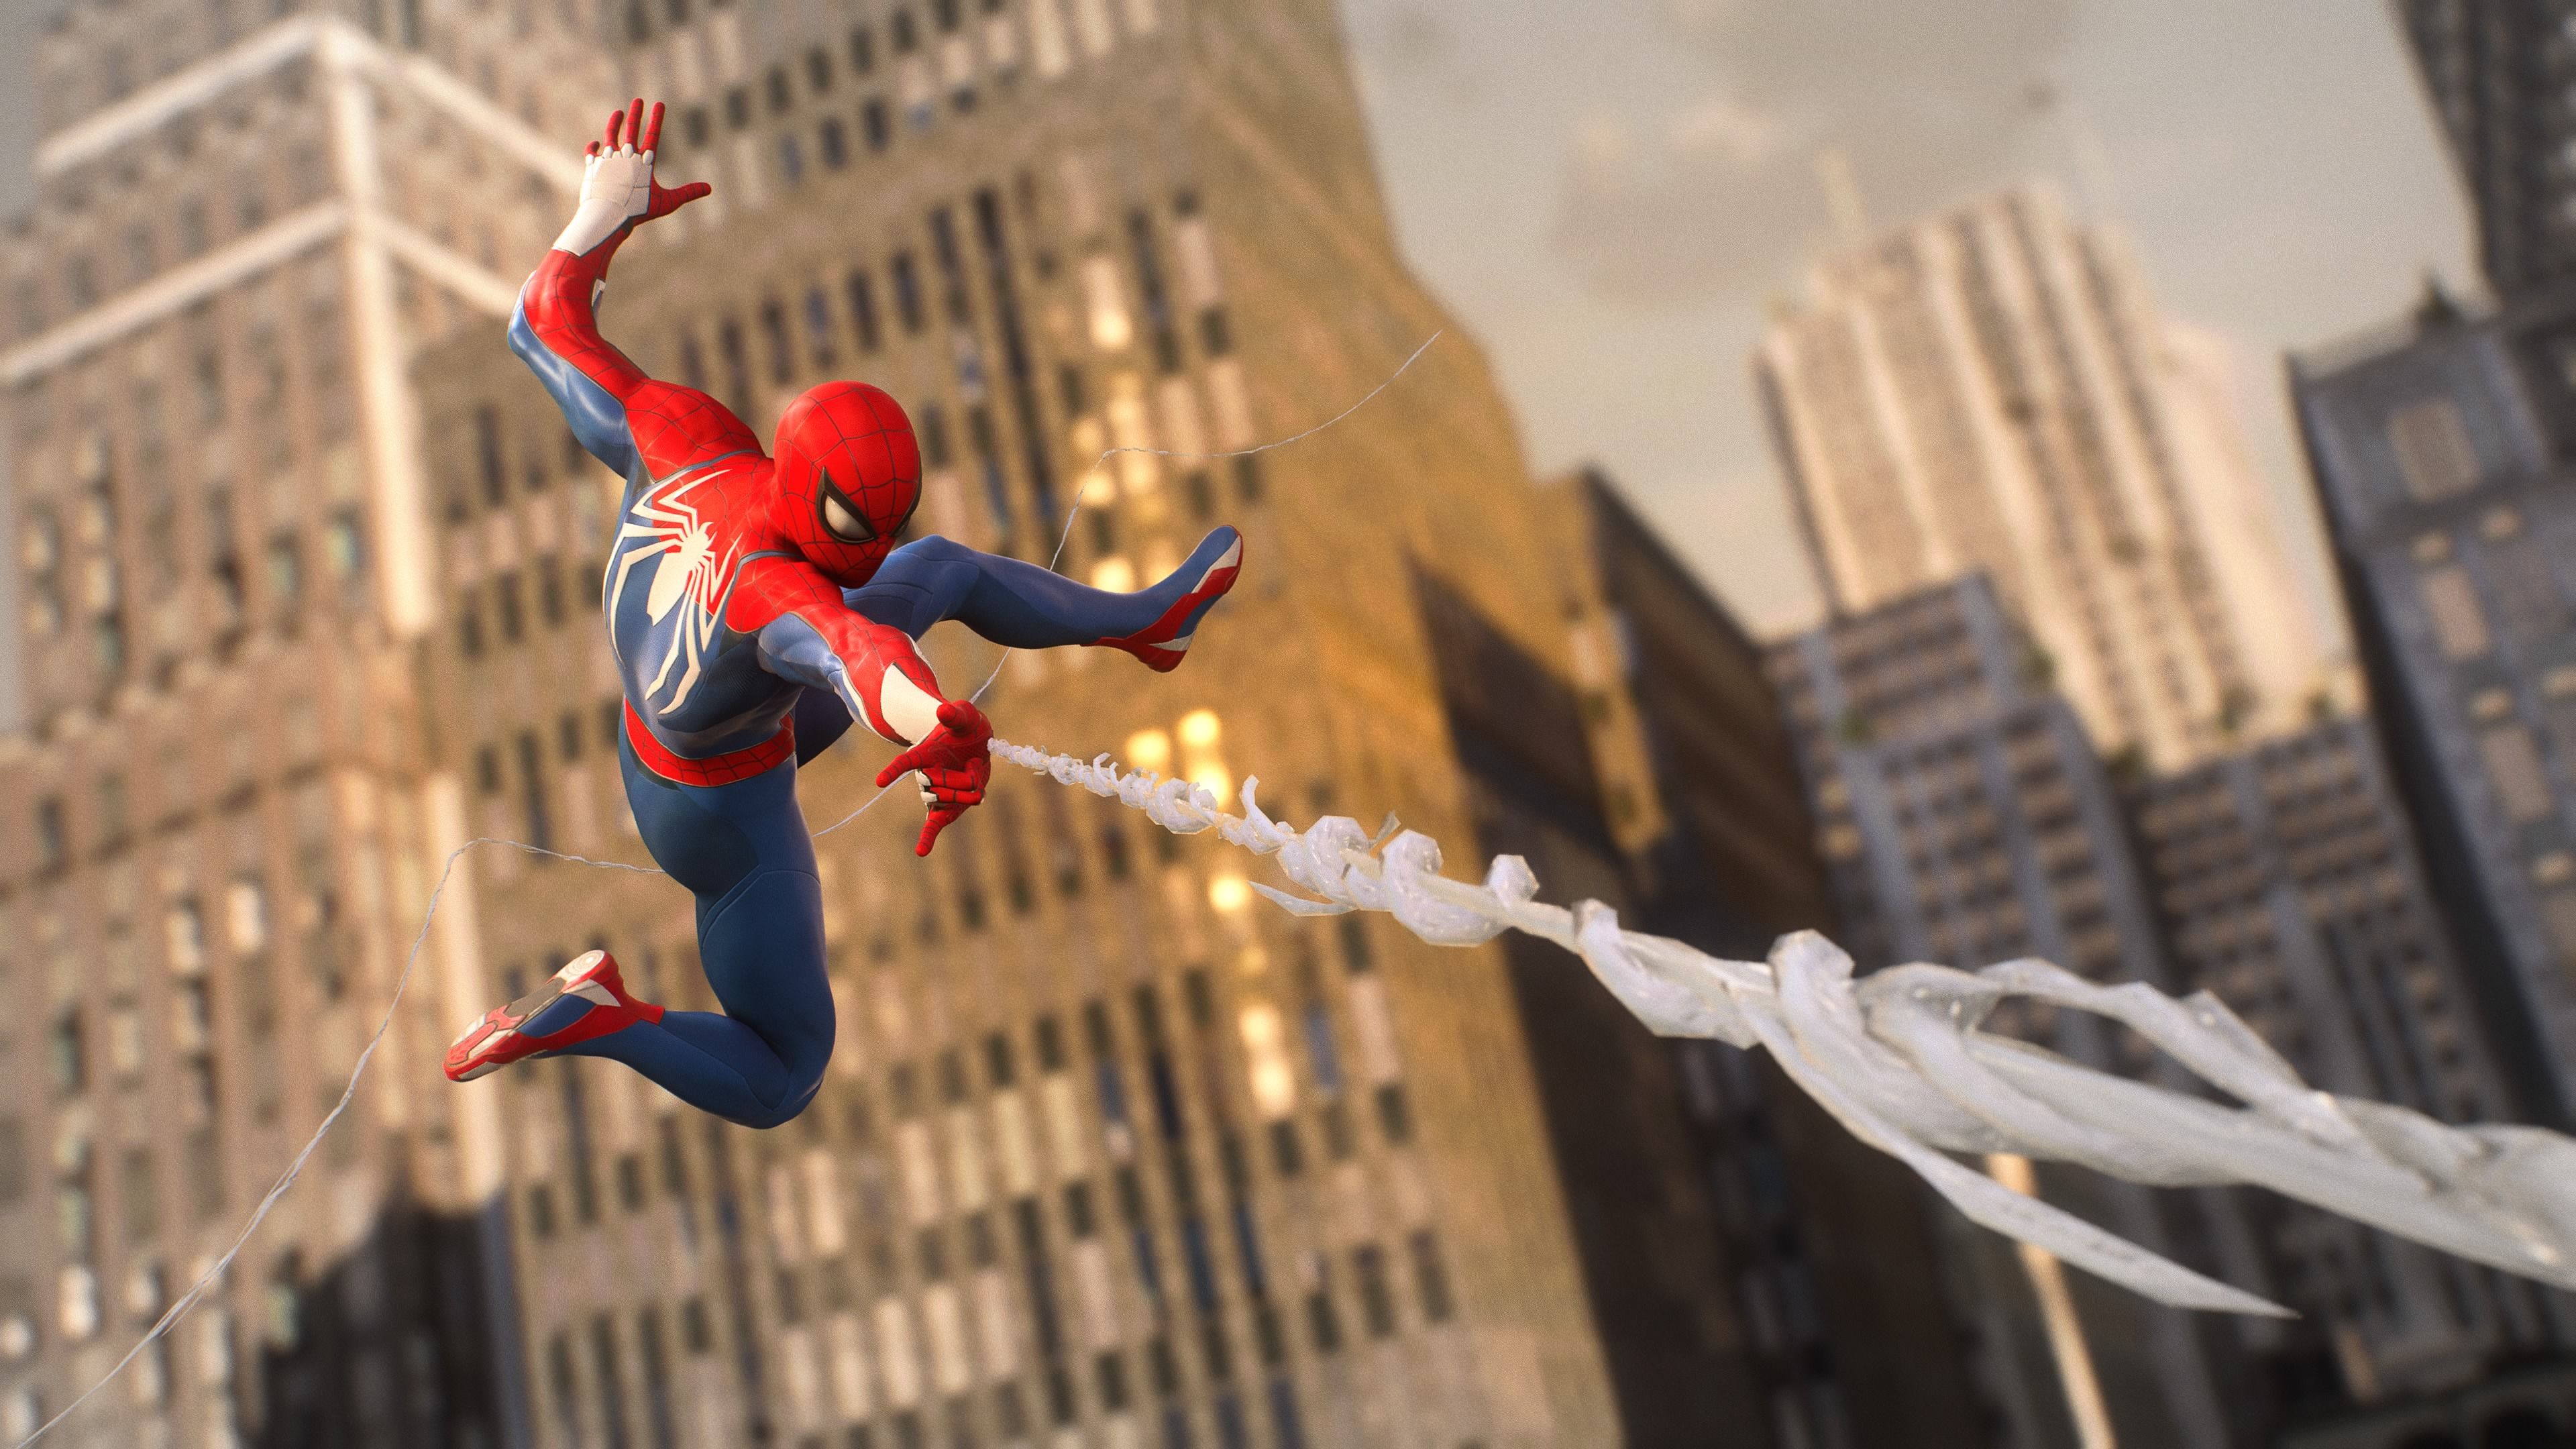 Marvel's Spider-Man 2 llegará exclusivamente a PS5 el 20 de